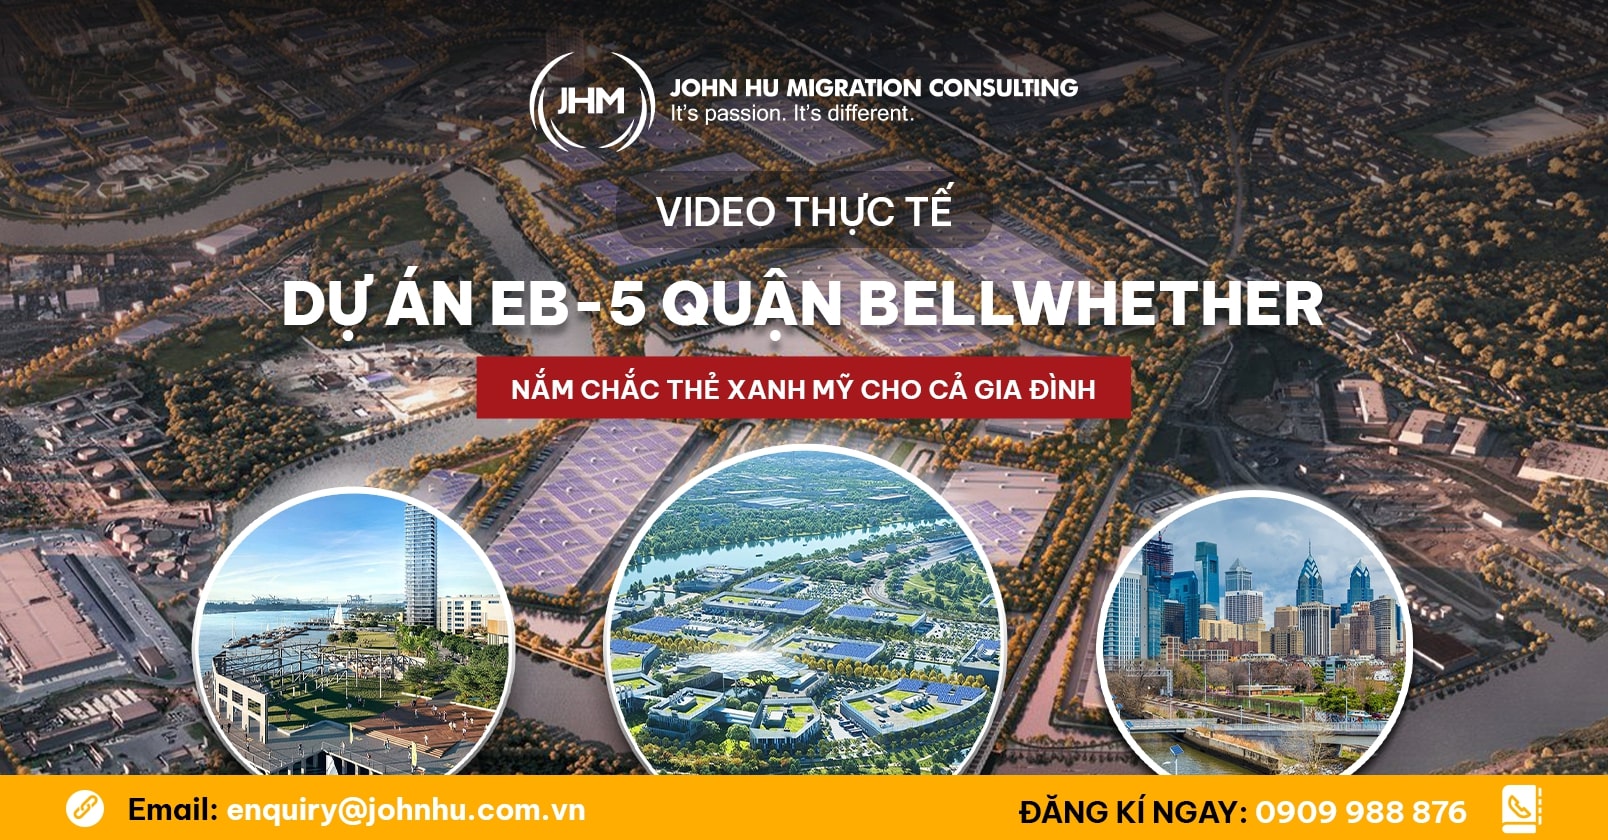 Video - Tham quan thực tế dự án EB-5 Quận Bellwhether mới nhất của CanAm John Hu Migration